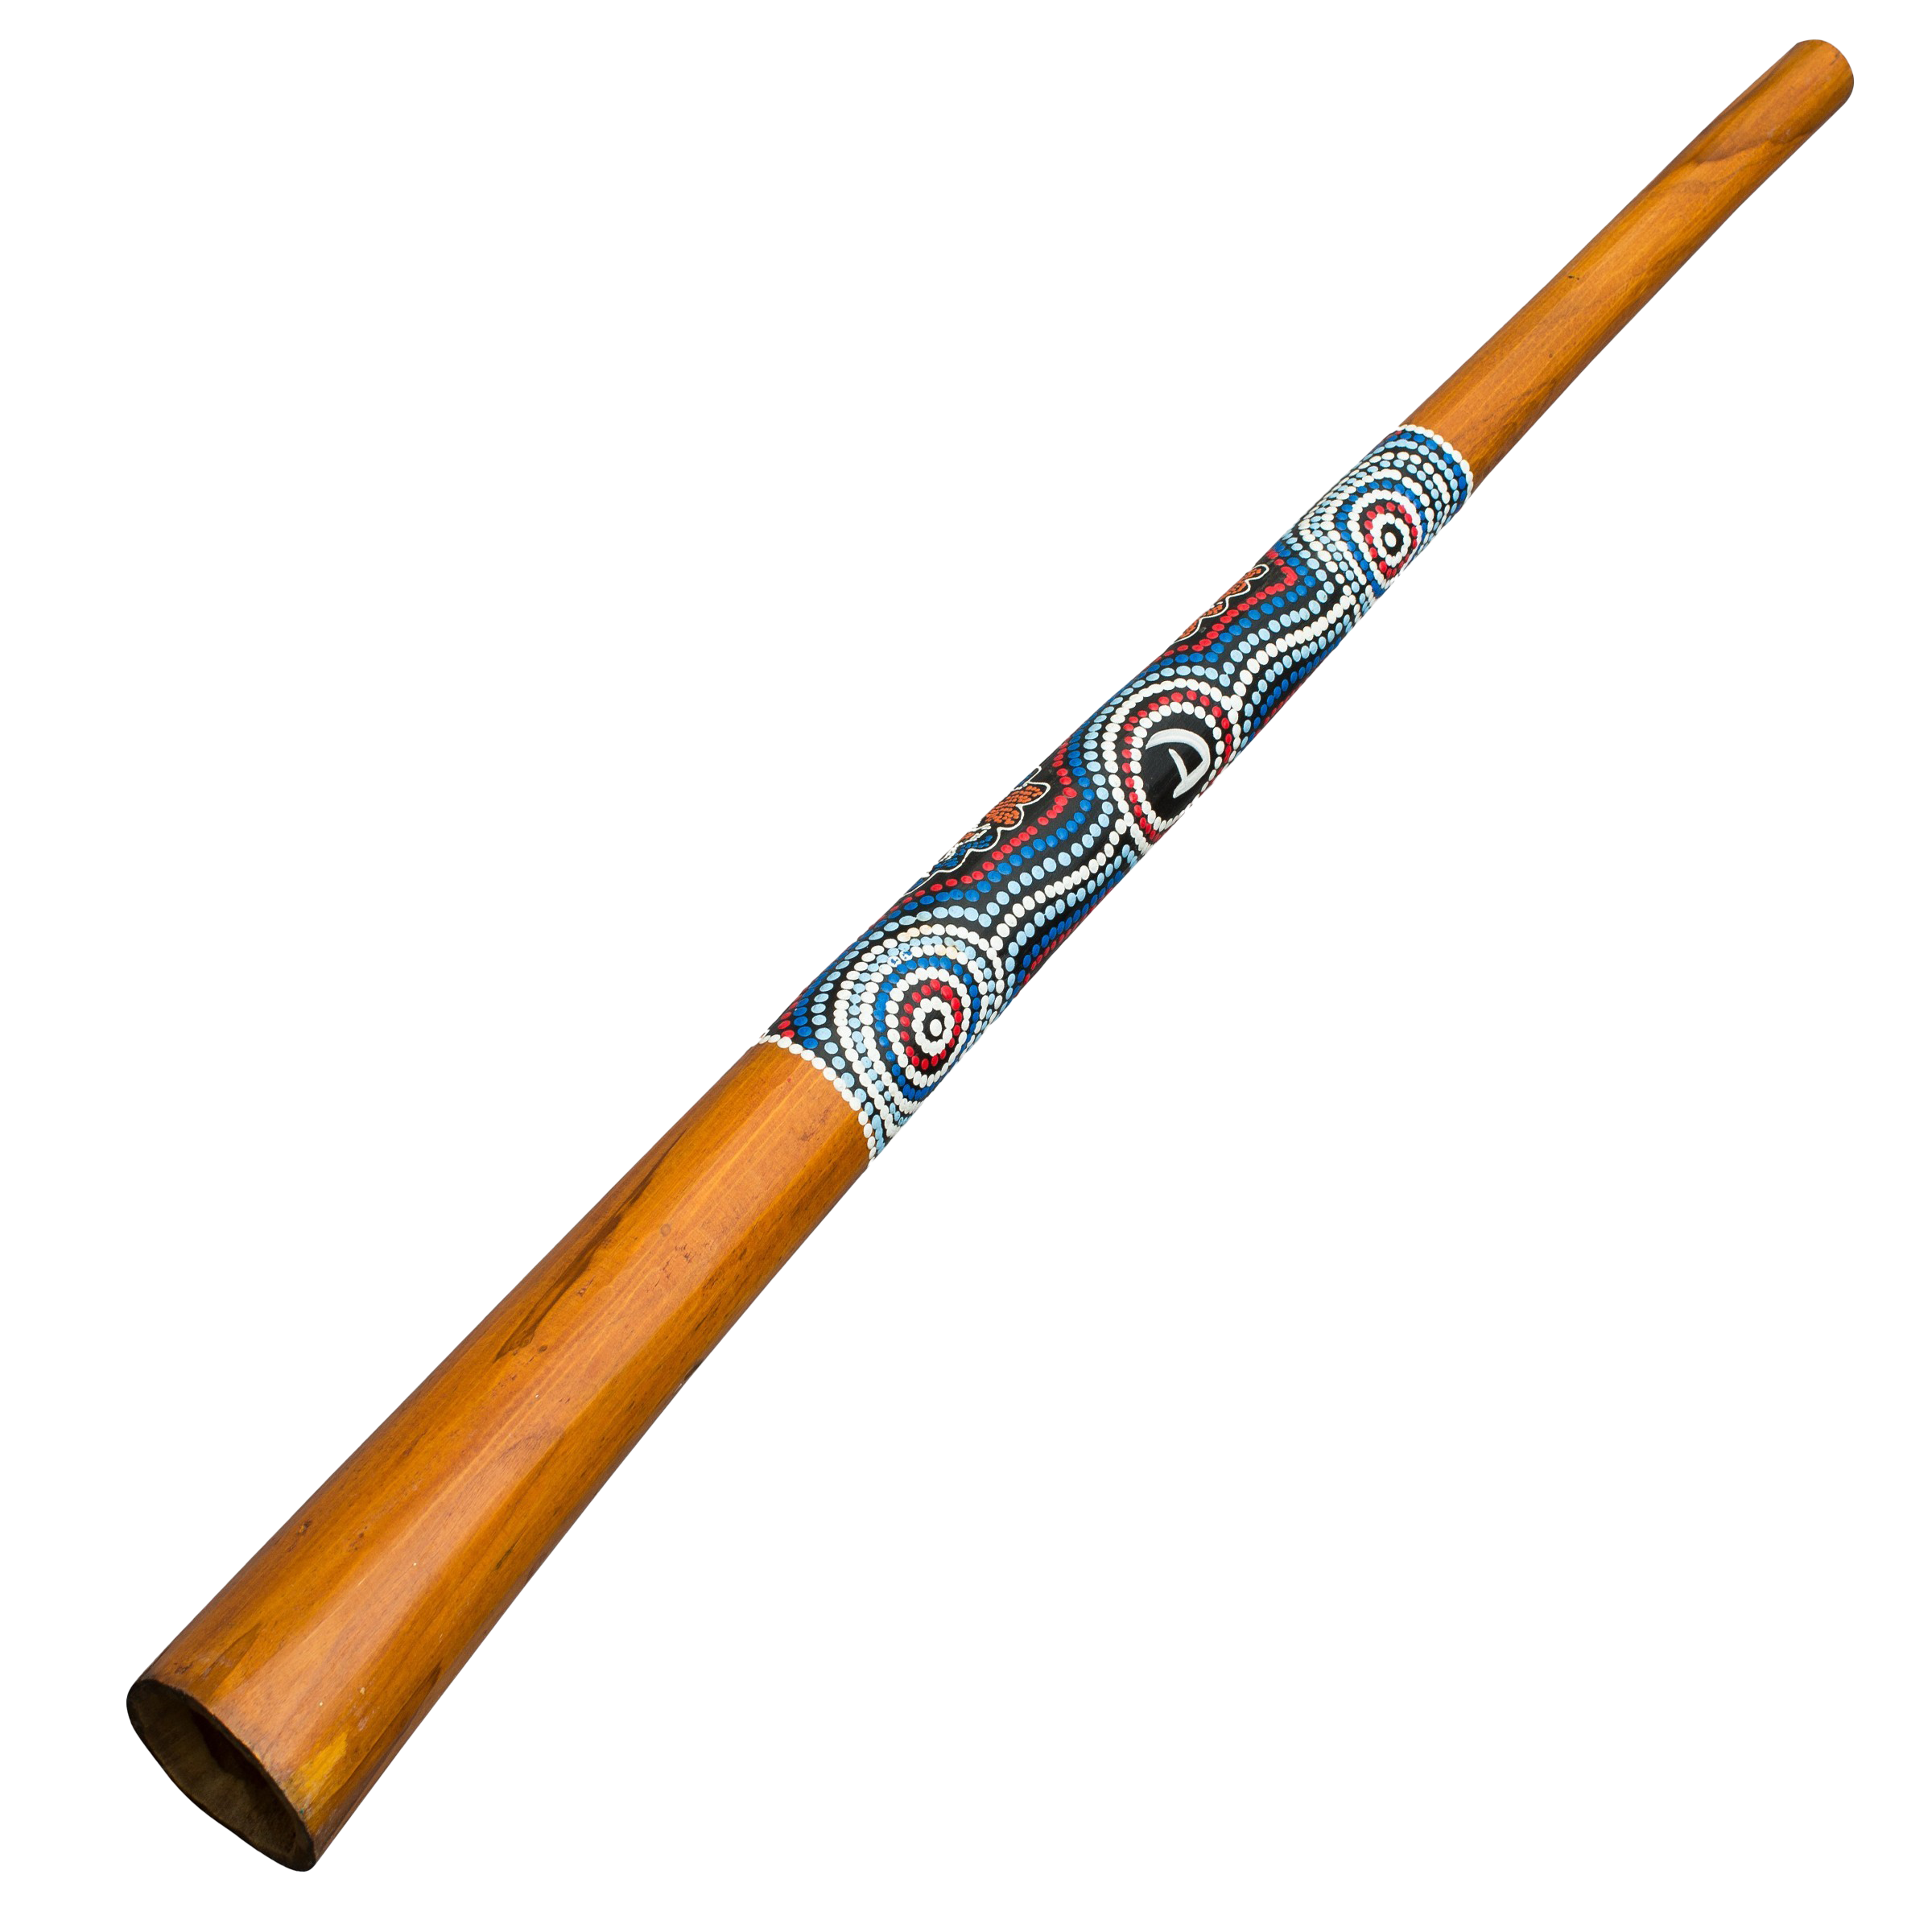 Didgeridoo Wind Instrument gratis imagen PNG